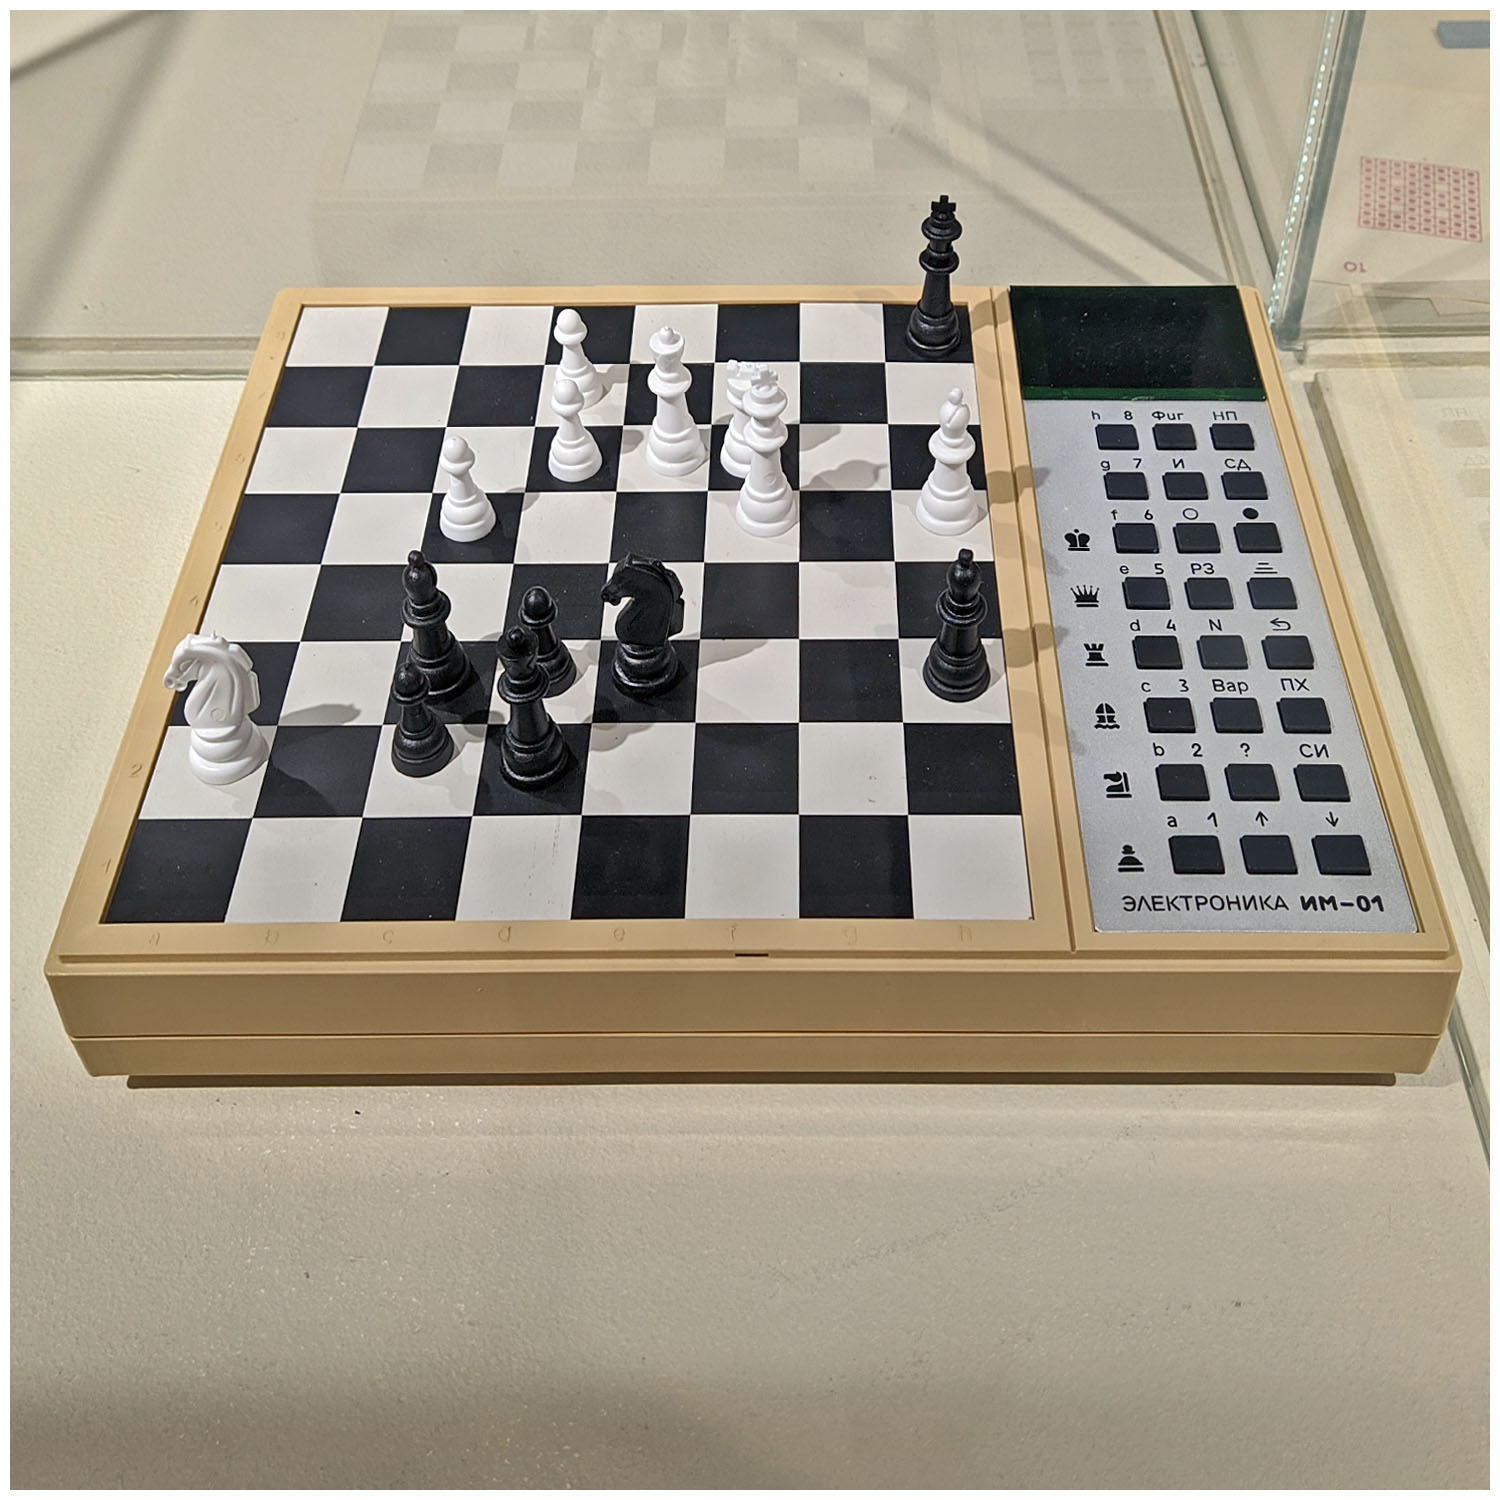 Шахматный компьютер «Электроника ИМ-01». 1986. Яндекс Музей